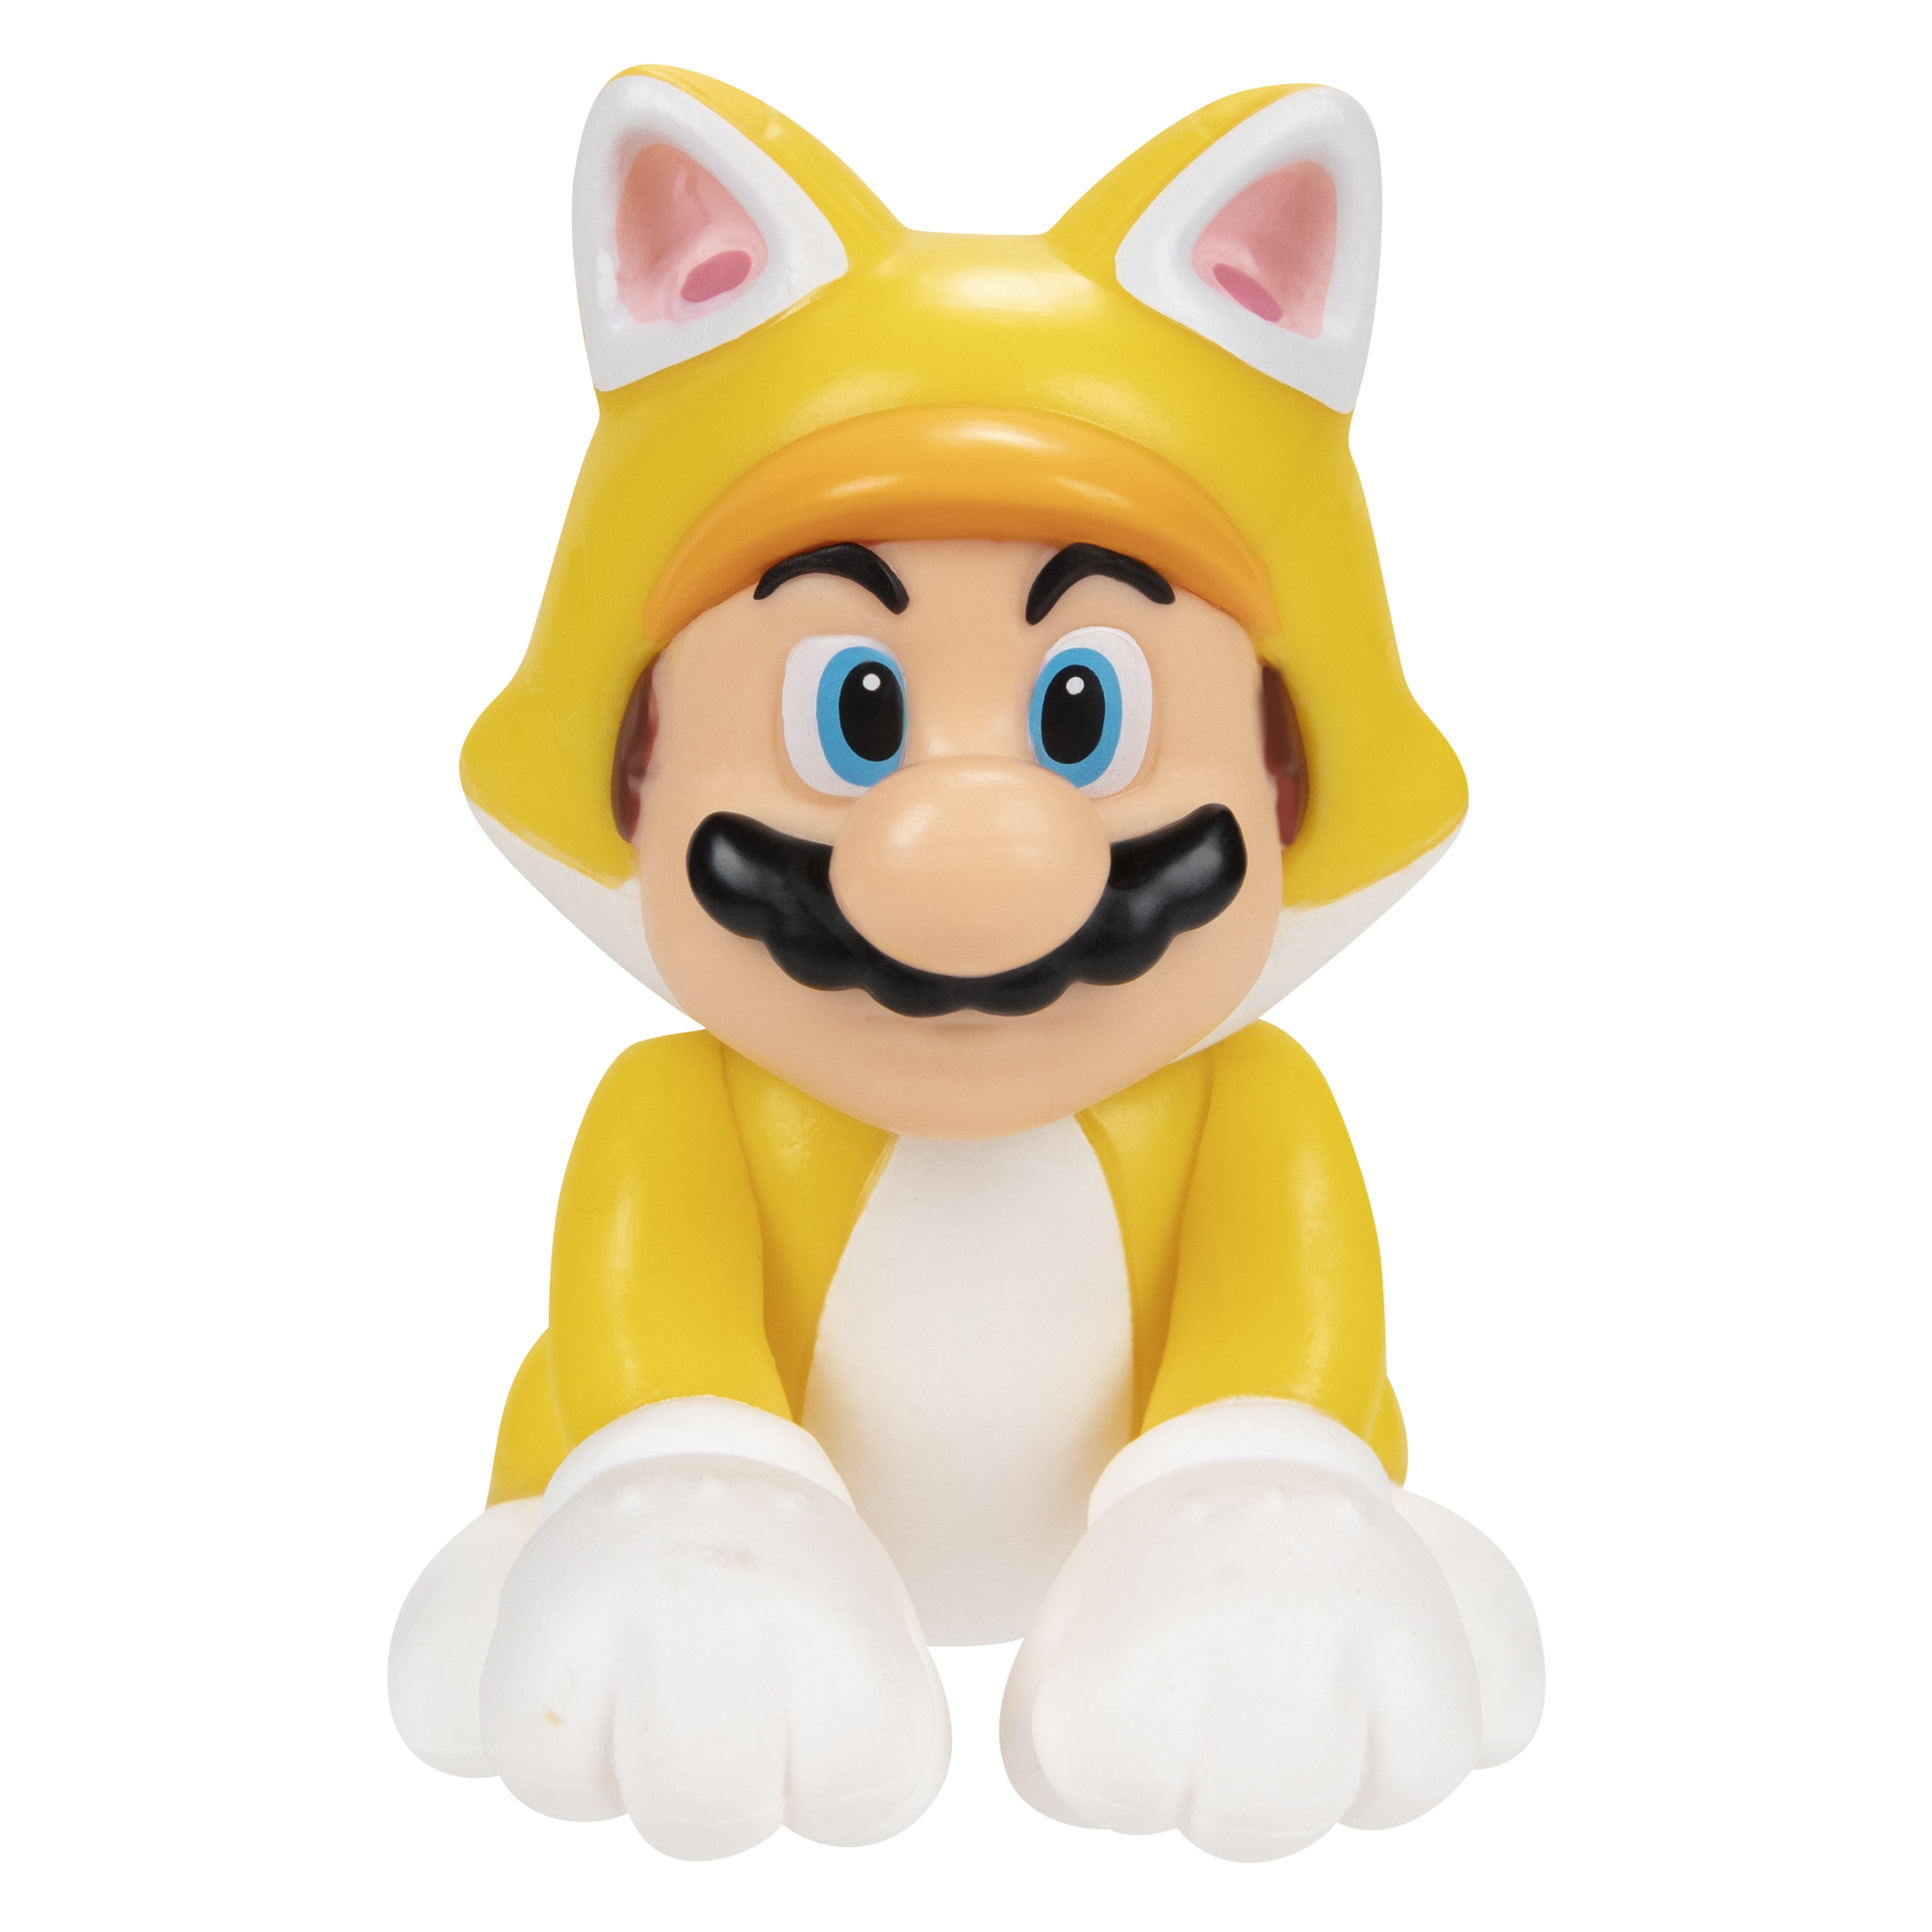 SUPER MARIO Nintendo Spielware Mario, cm Mario 6,5 Super Cat Figur